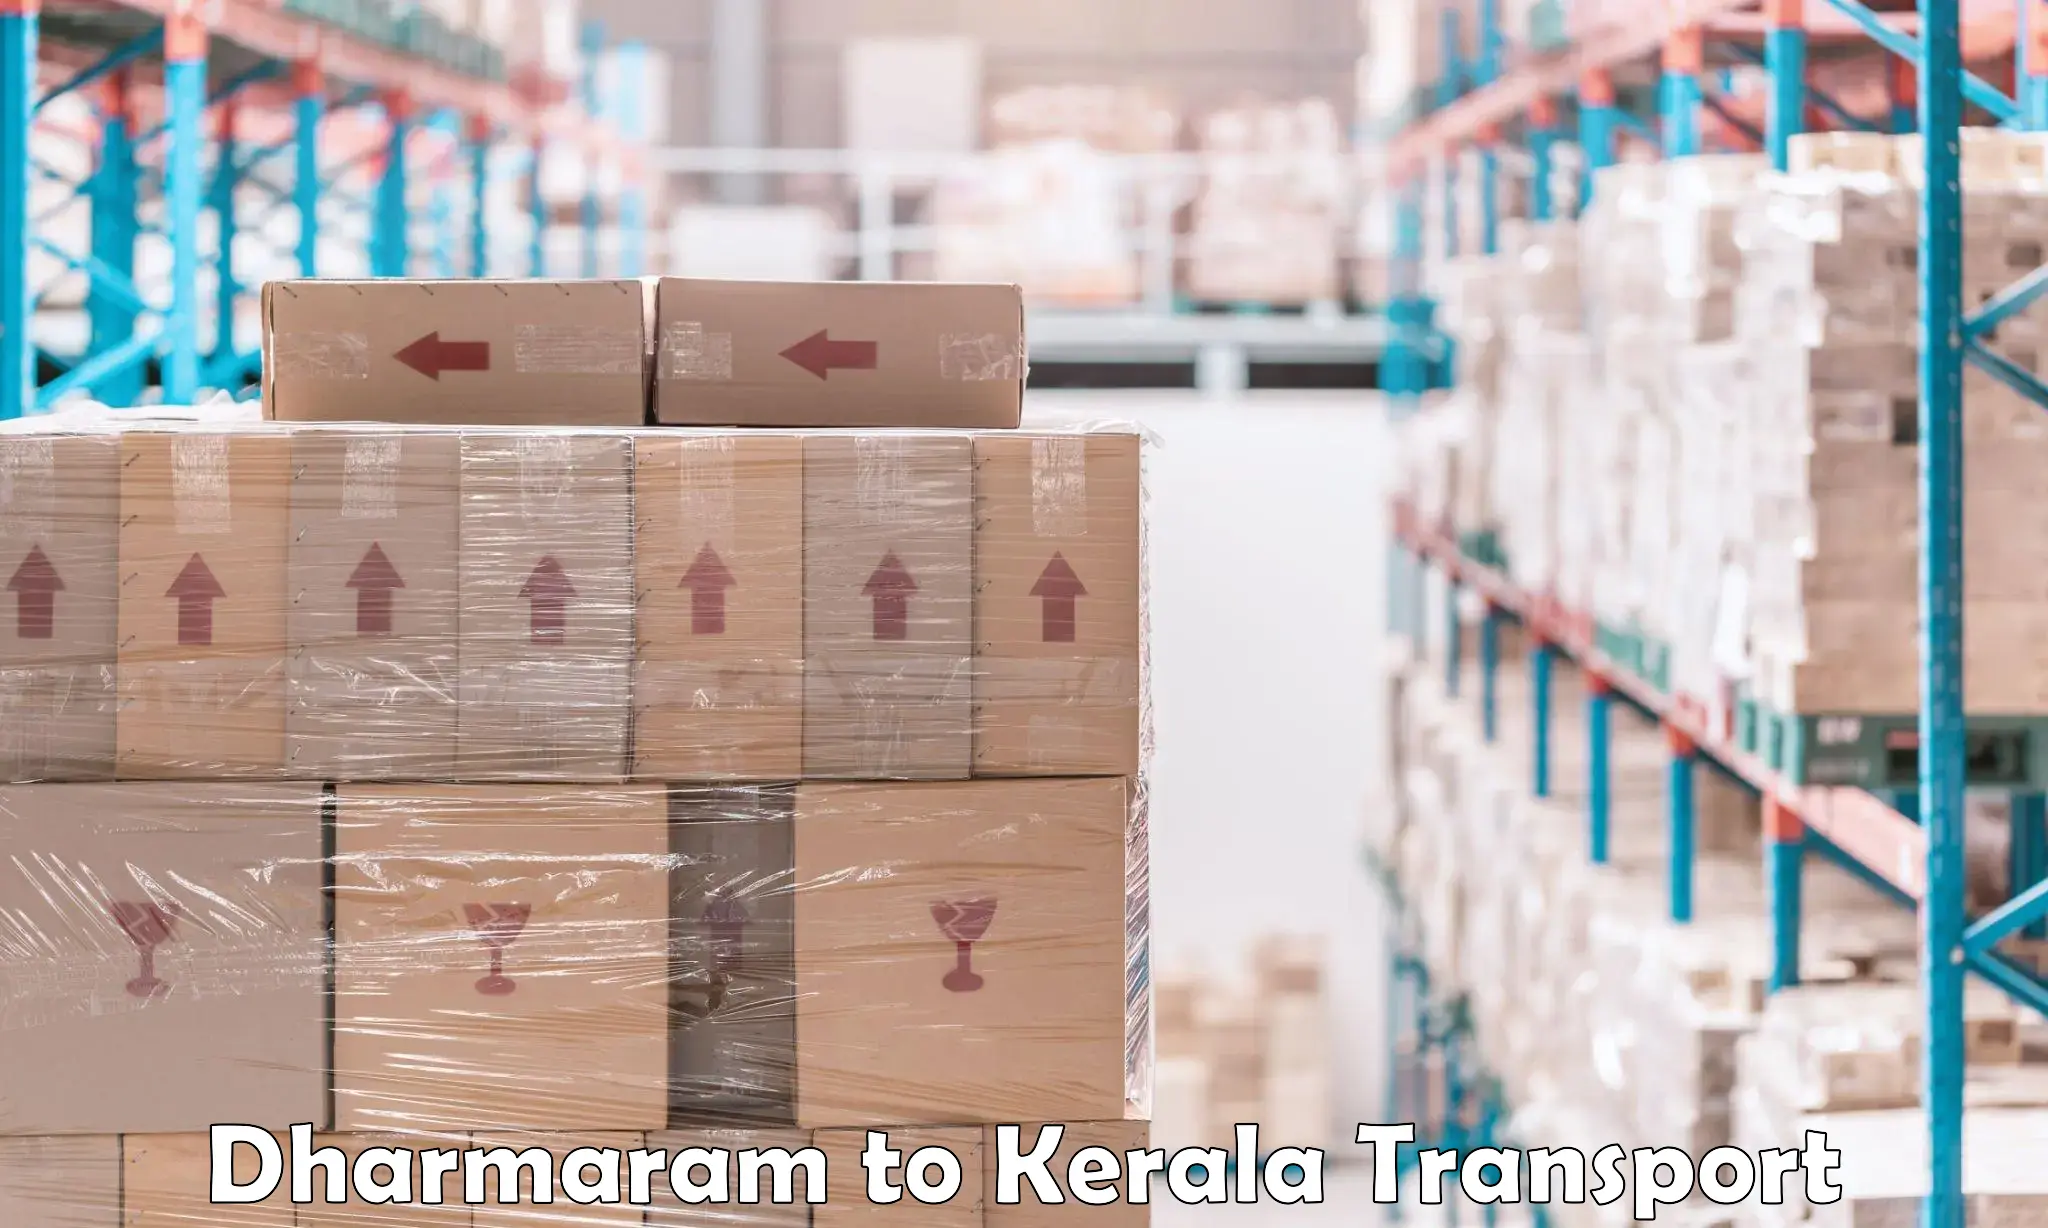 Transport shared services Dharmaram to Thiruvananthapuram